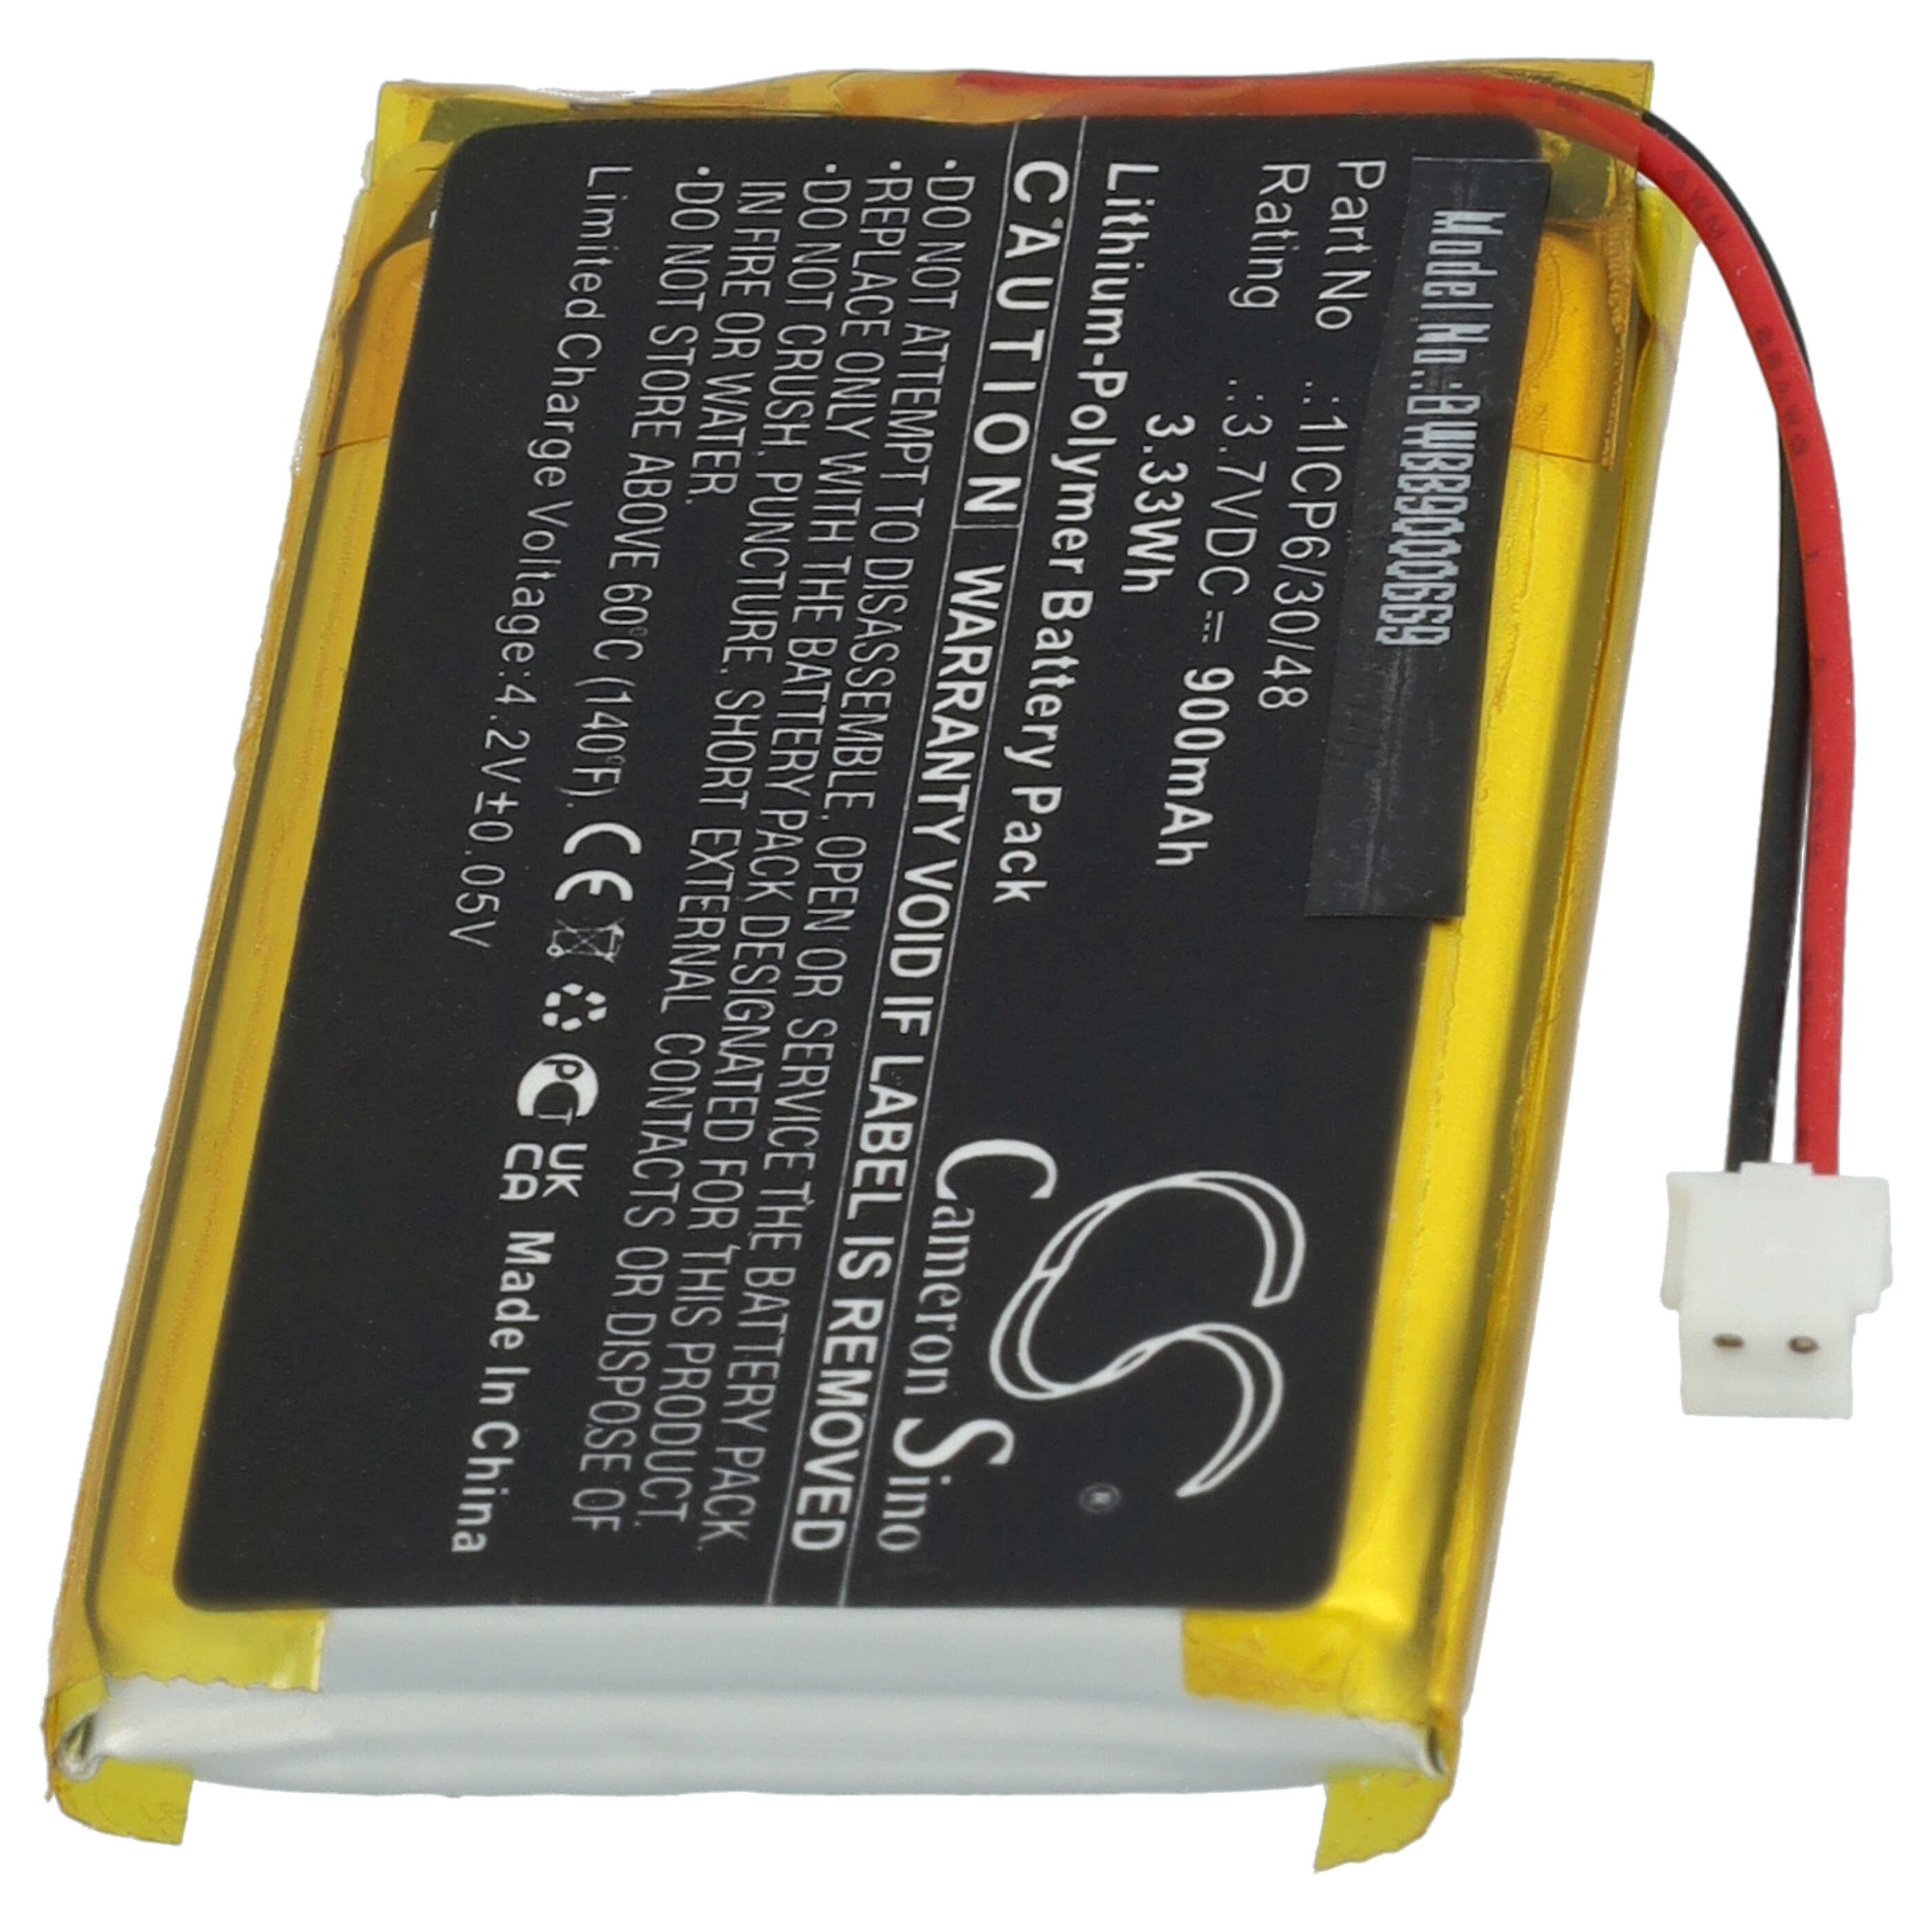 Batterie remplace Babymoov 1ICP6/30/48 pour moniteur bébé - 900mAh 3,7V Li-polymère